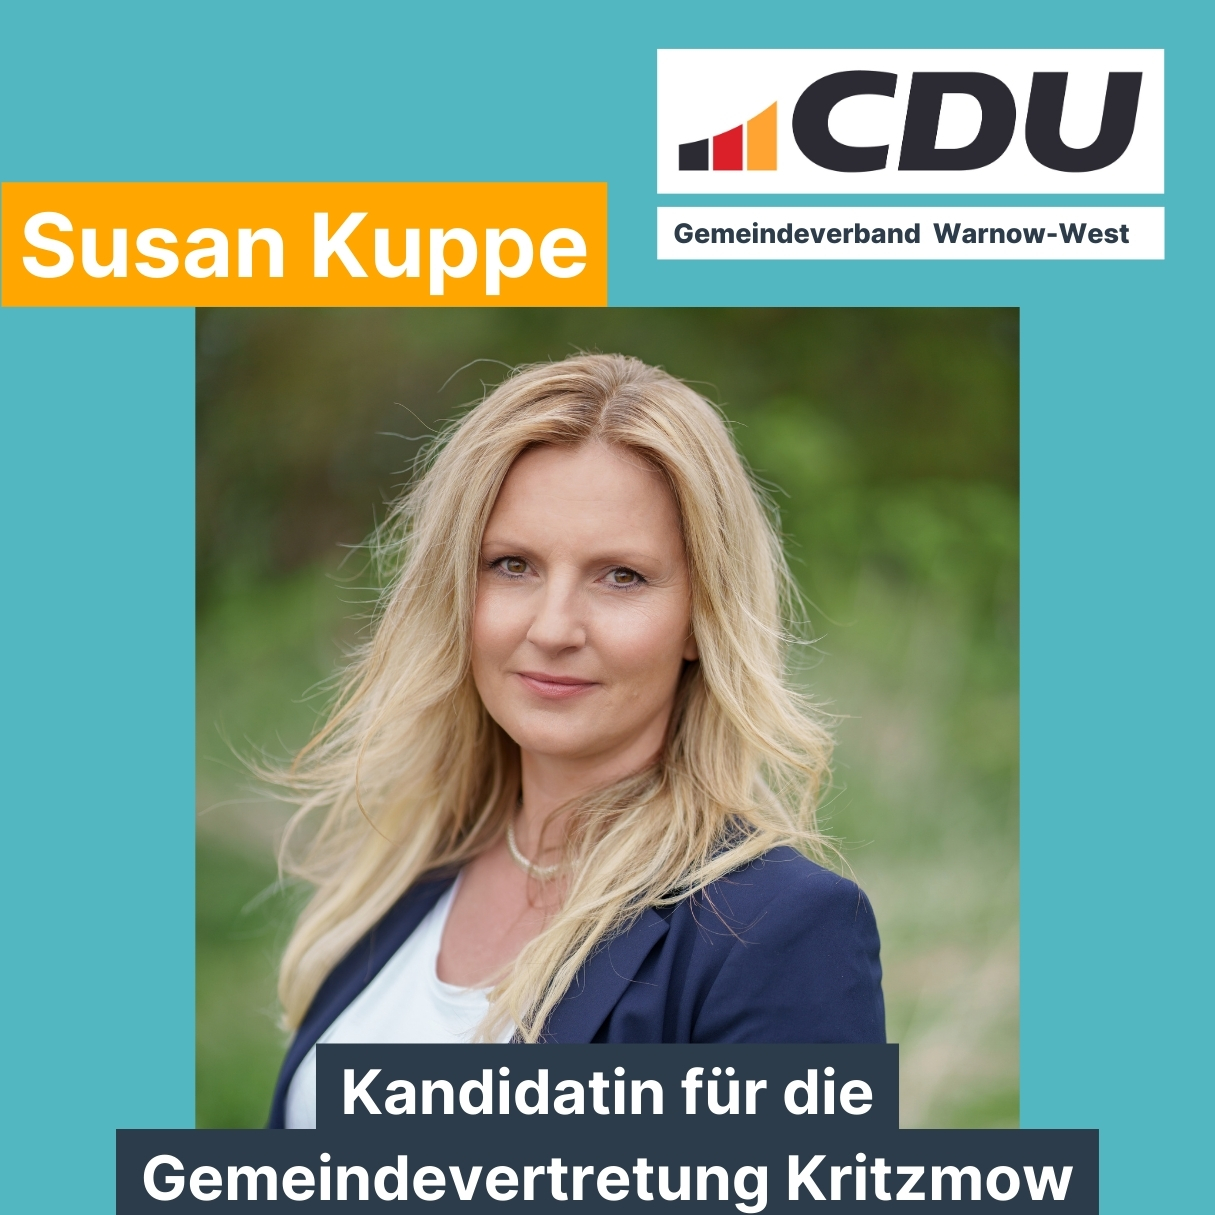 Susan Kuppe